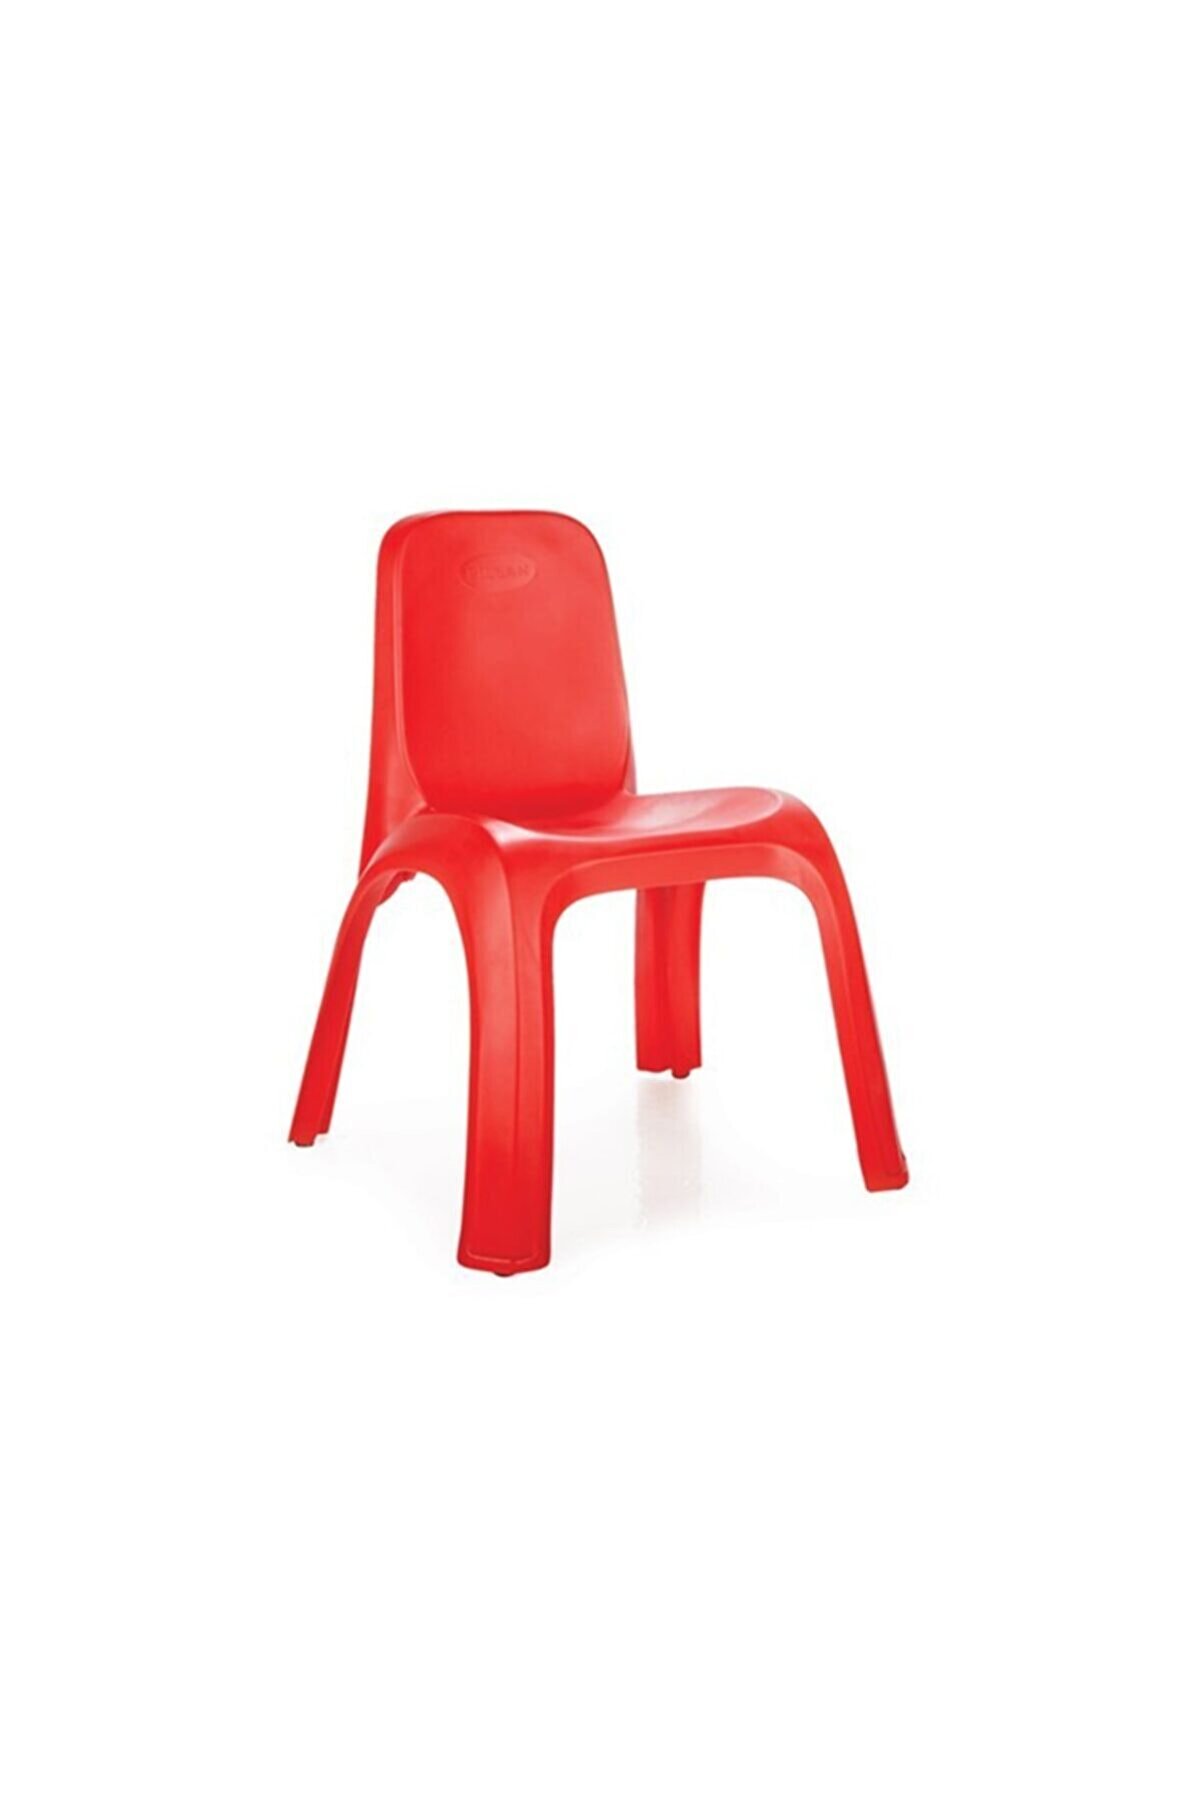 PİLSAN Kıng Sandalye (Kırmızı)